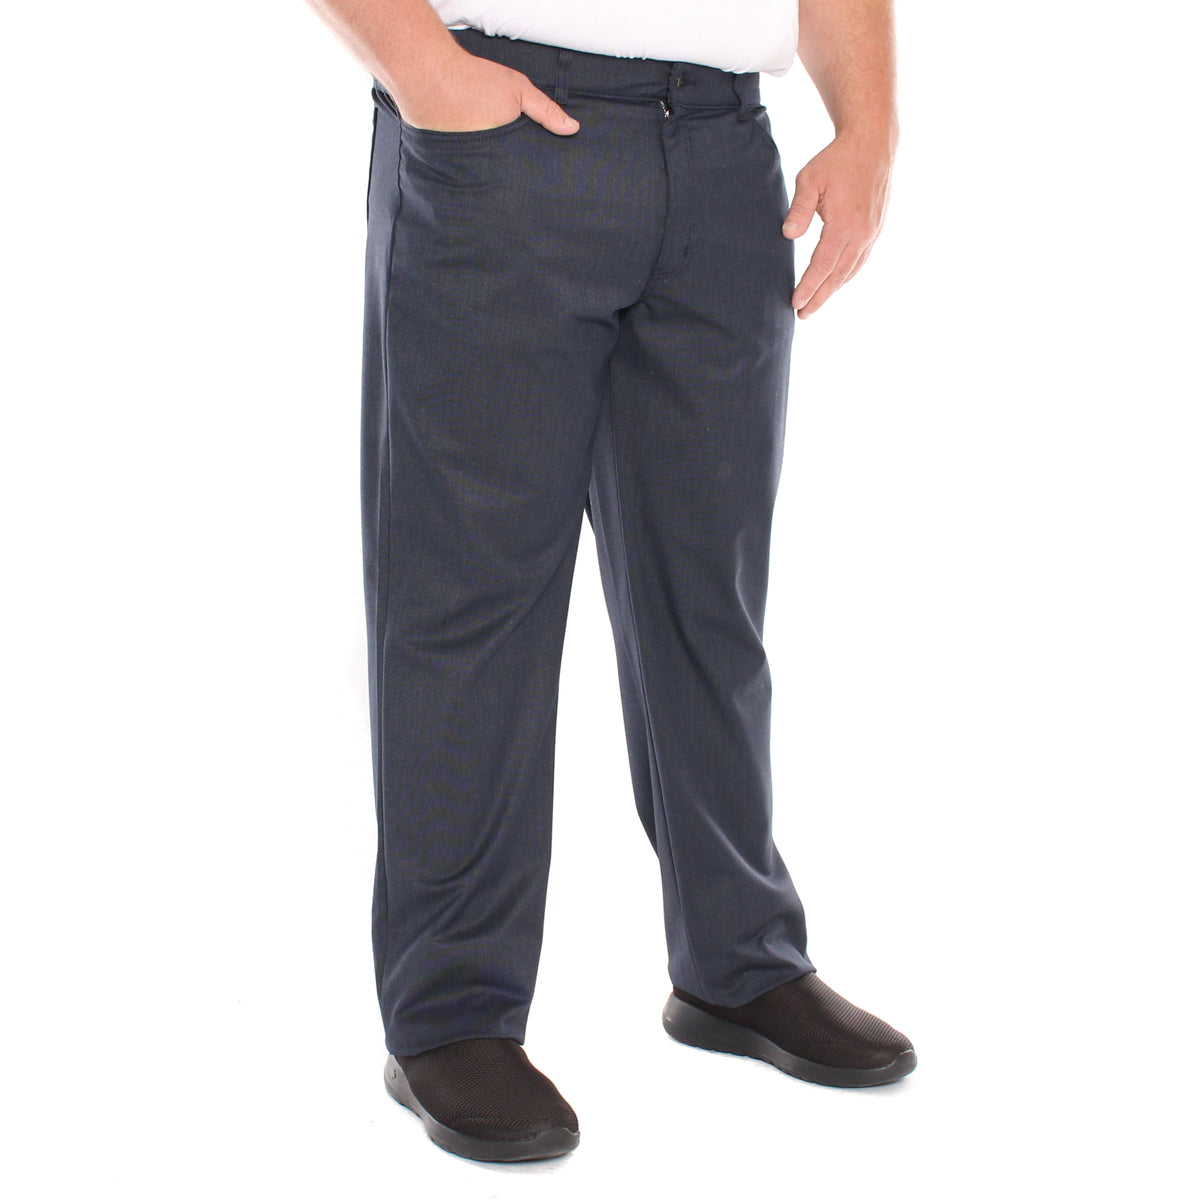 Pantalon extensible, taille régulière